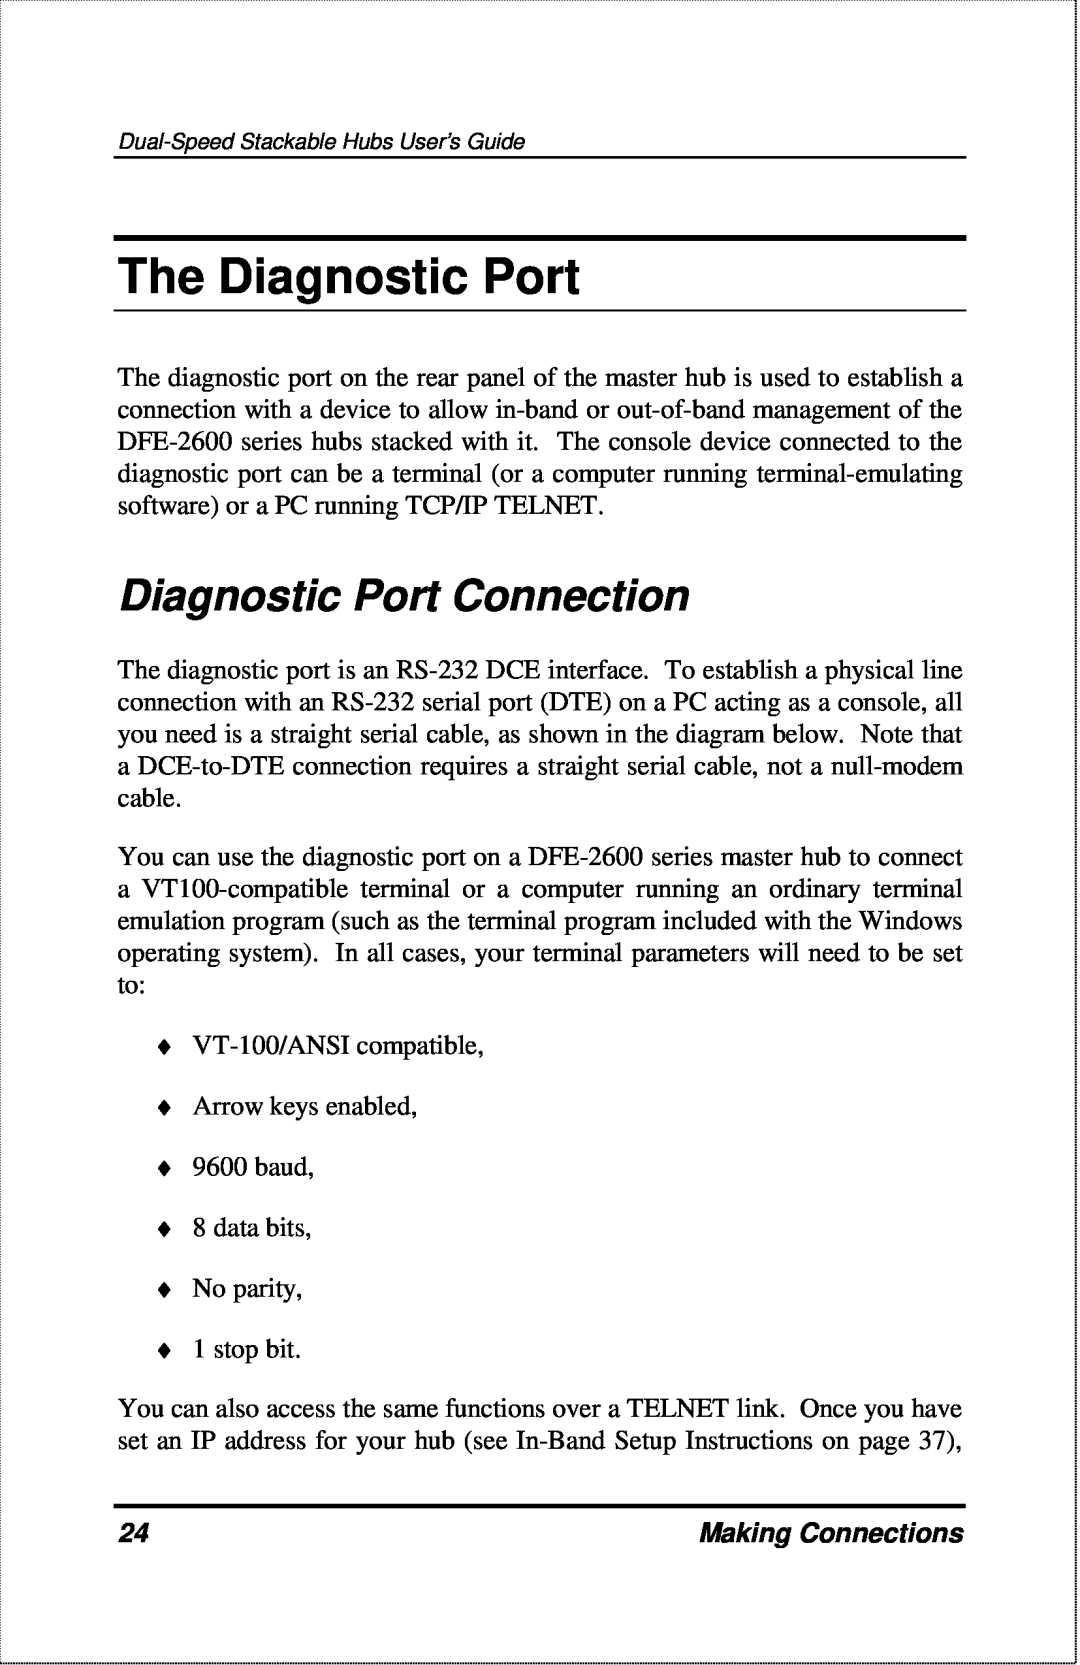 D-Link DFE-2600 manual The Diagnostic Port, Diagnostic Port Connection, Making Connections 